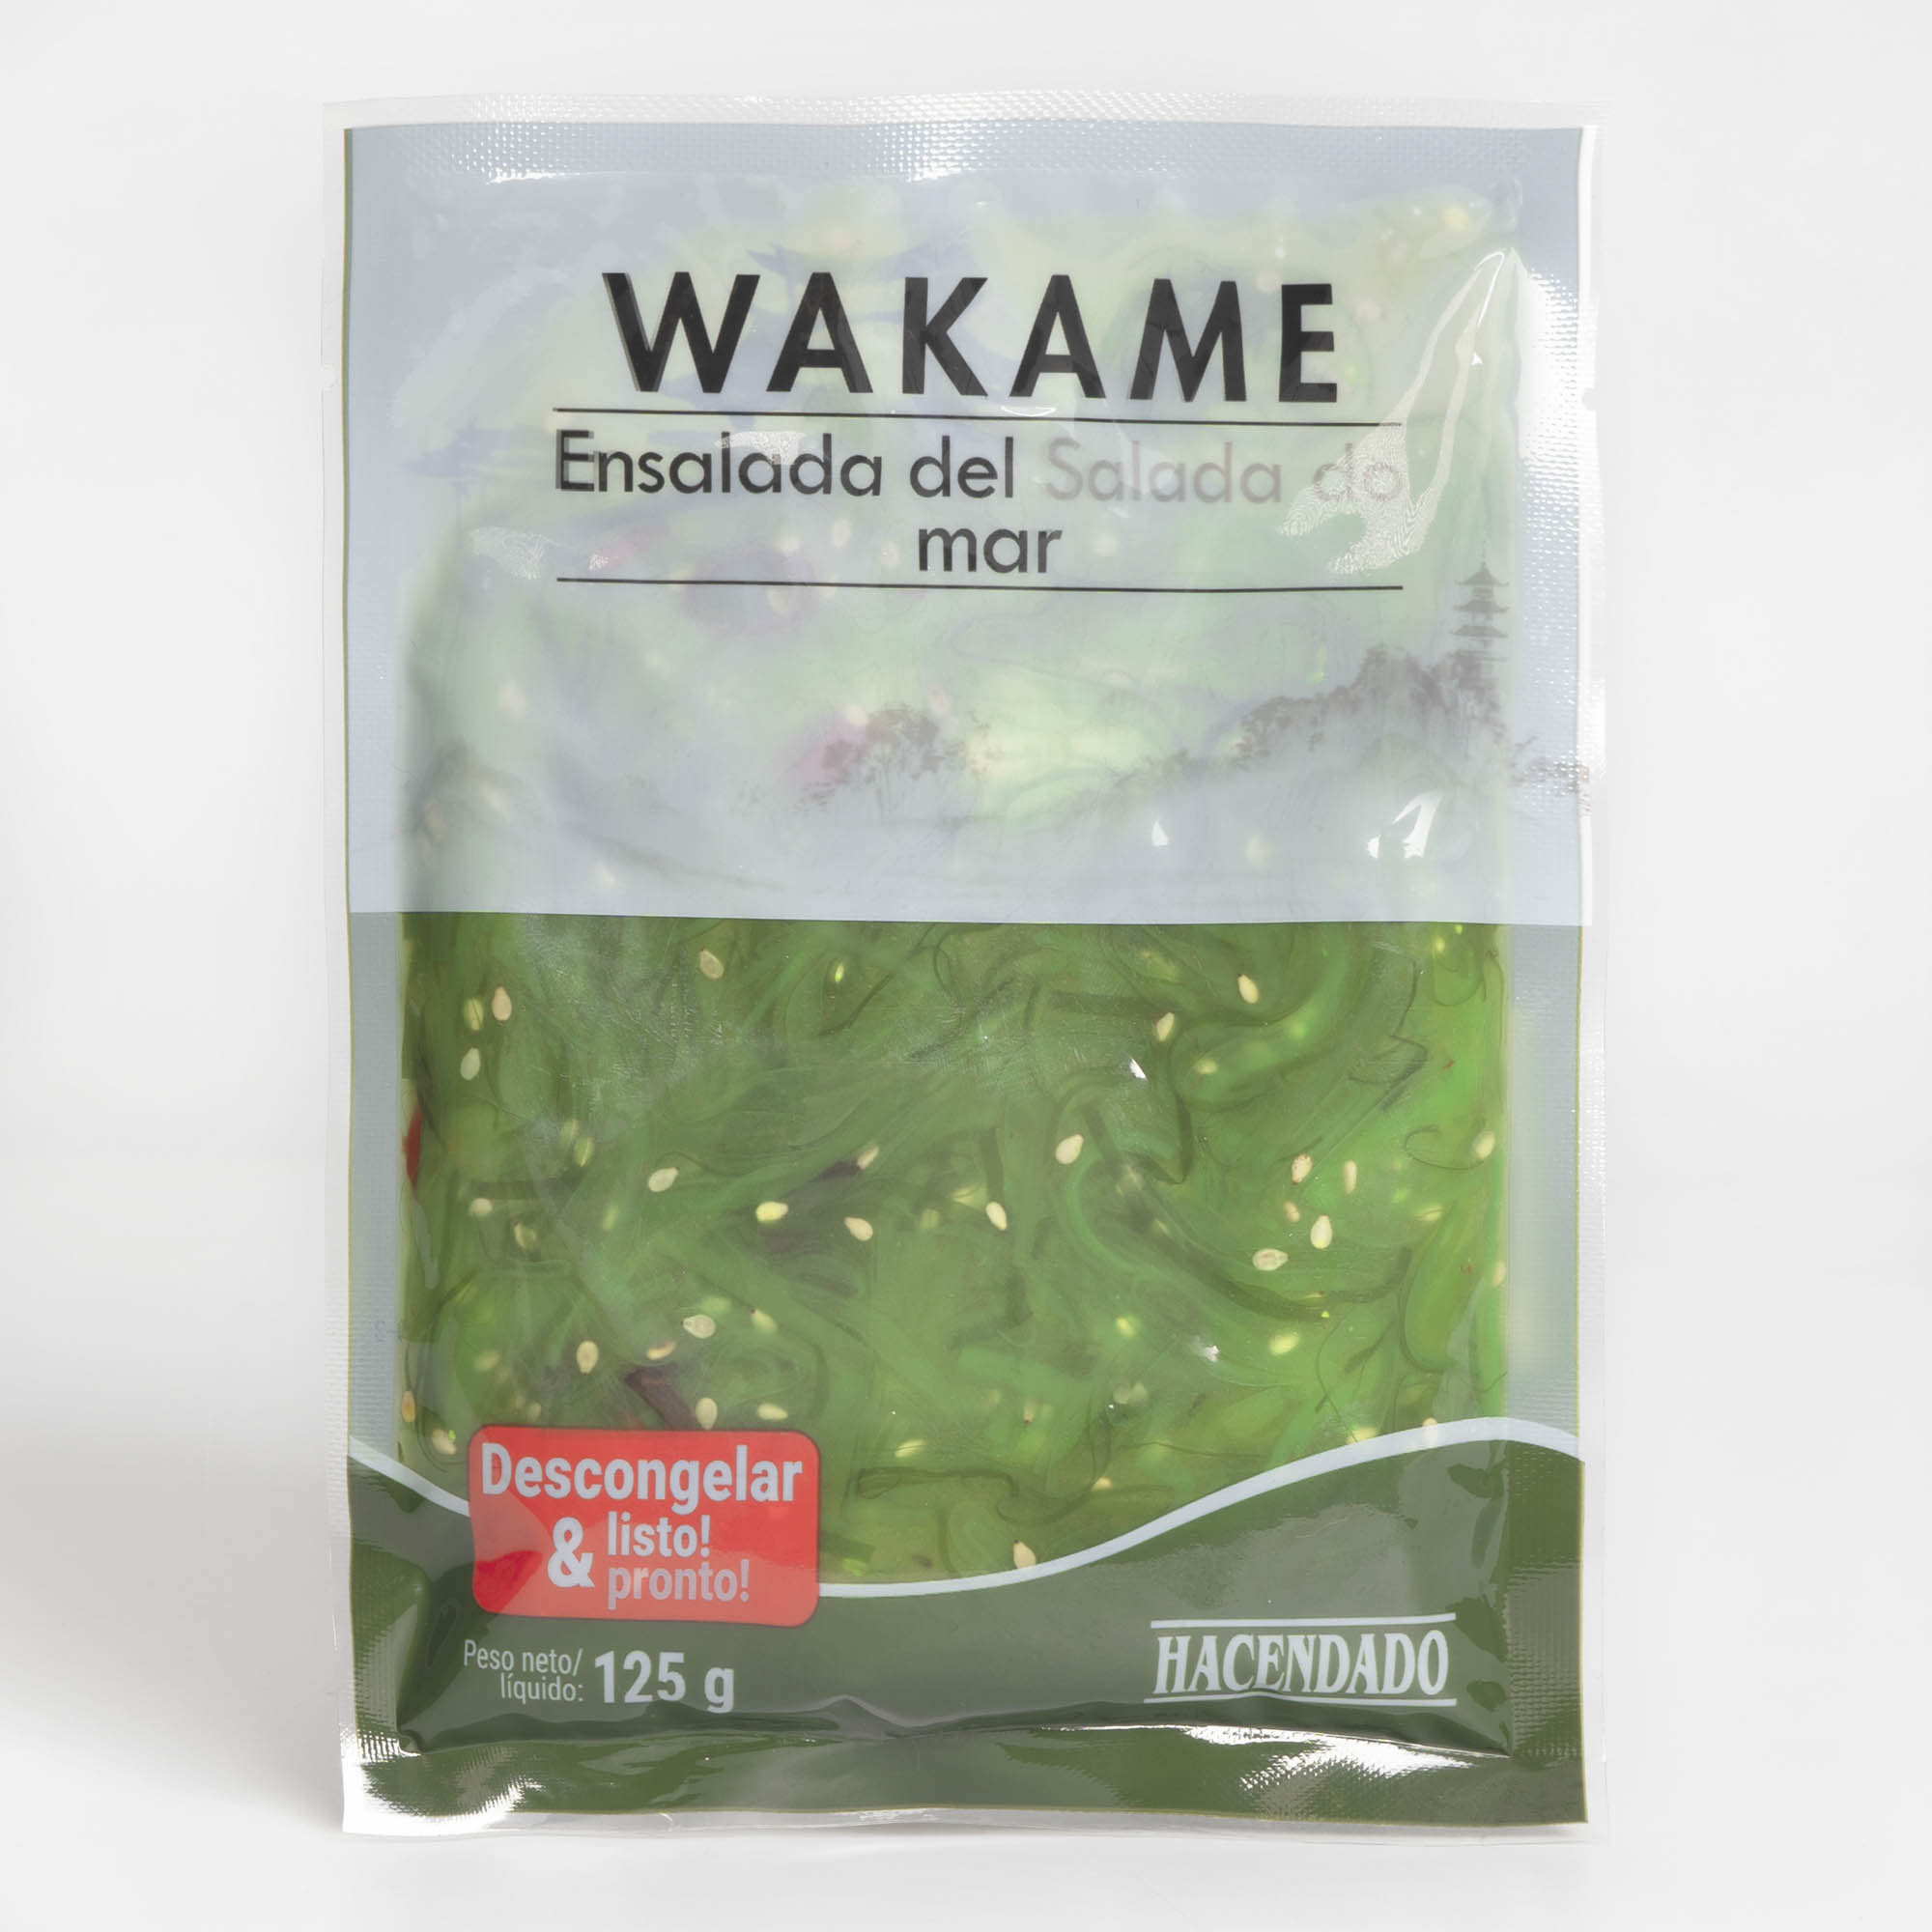 Wakame – Novum